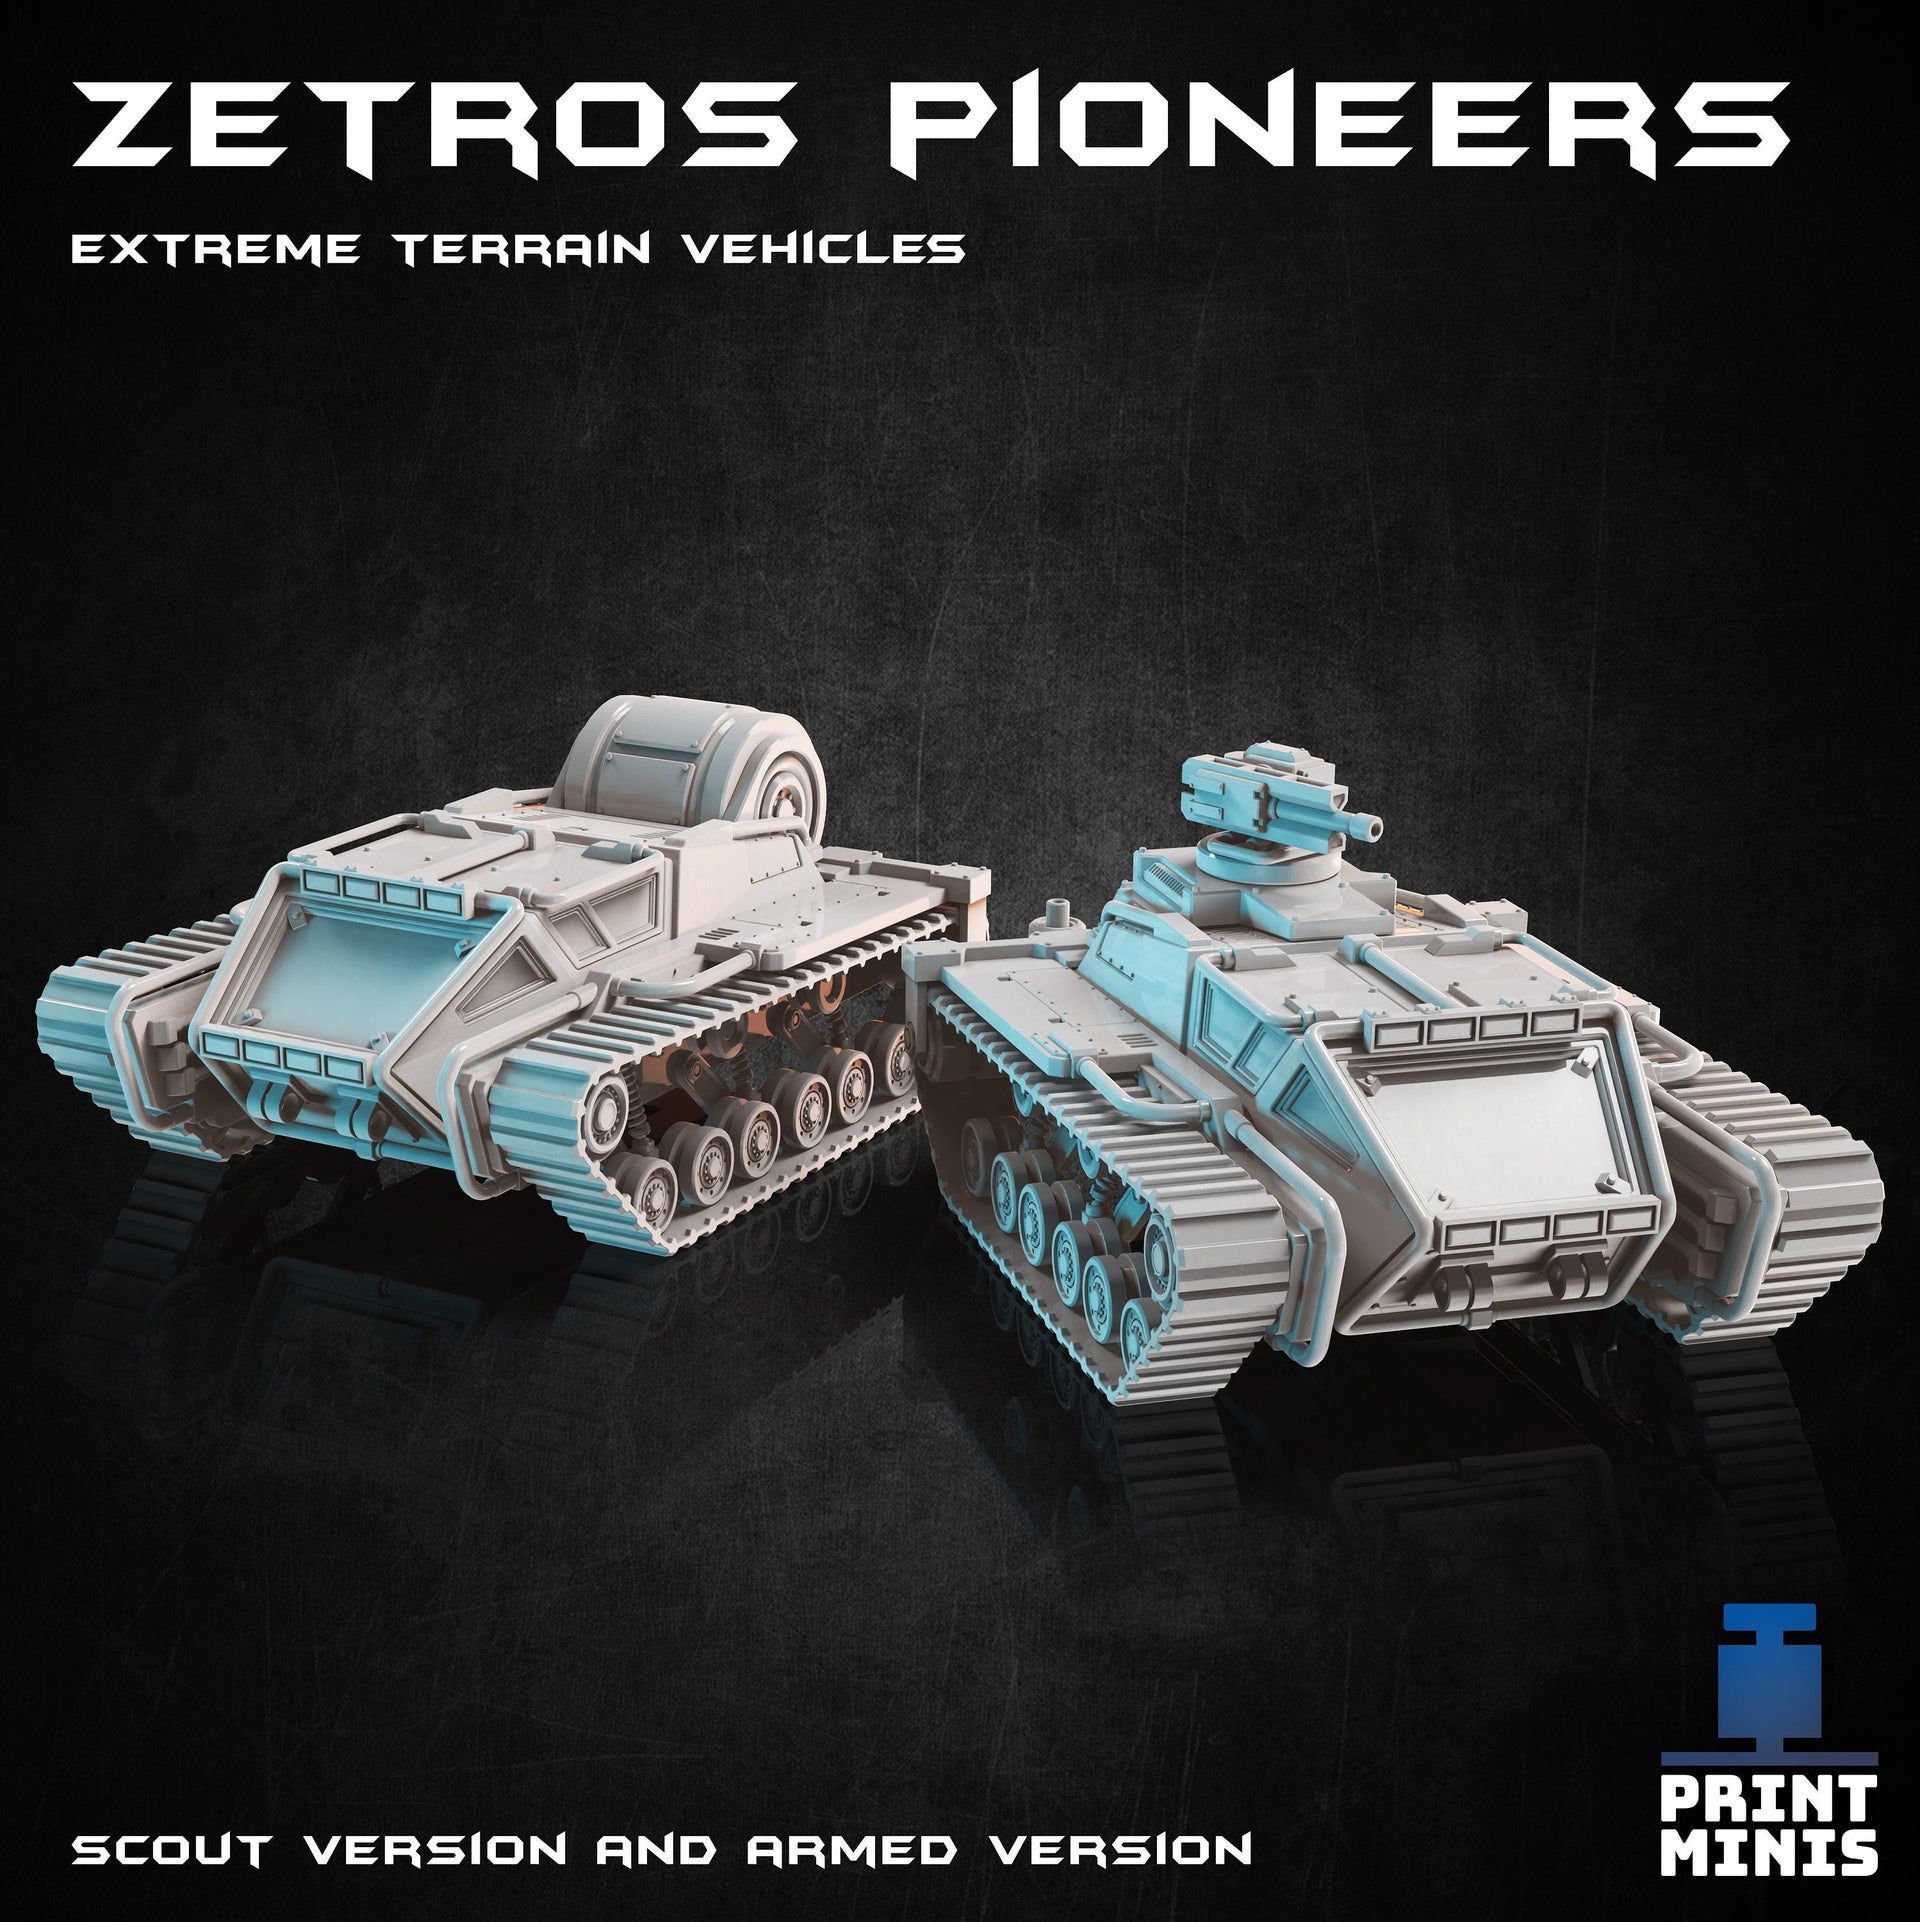 Zetross Pioneer Snow Vehicle - Print Minis 